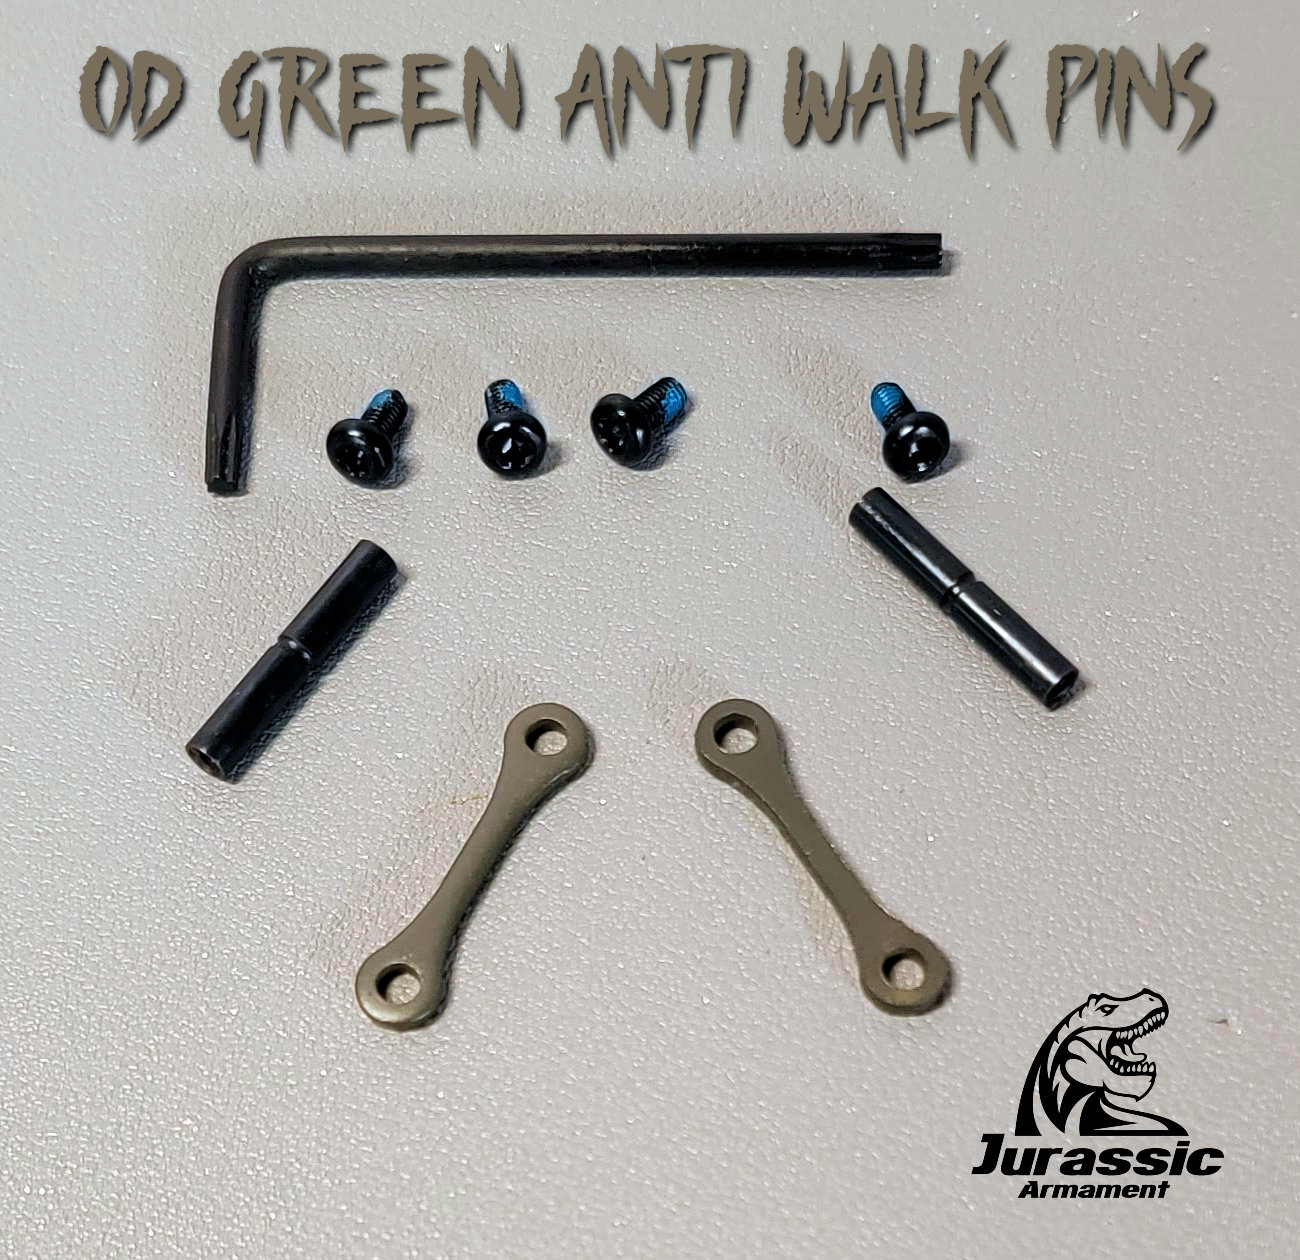 AR15 / AR10 Anti Walk Pins Installation 